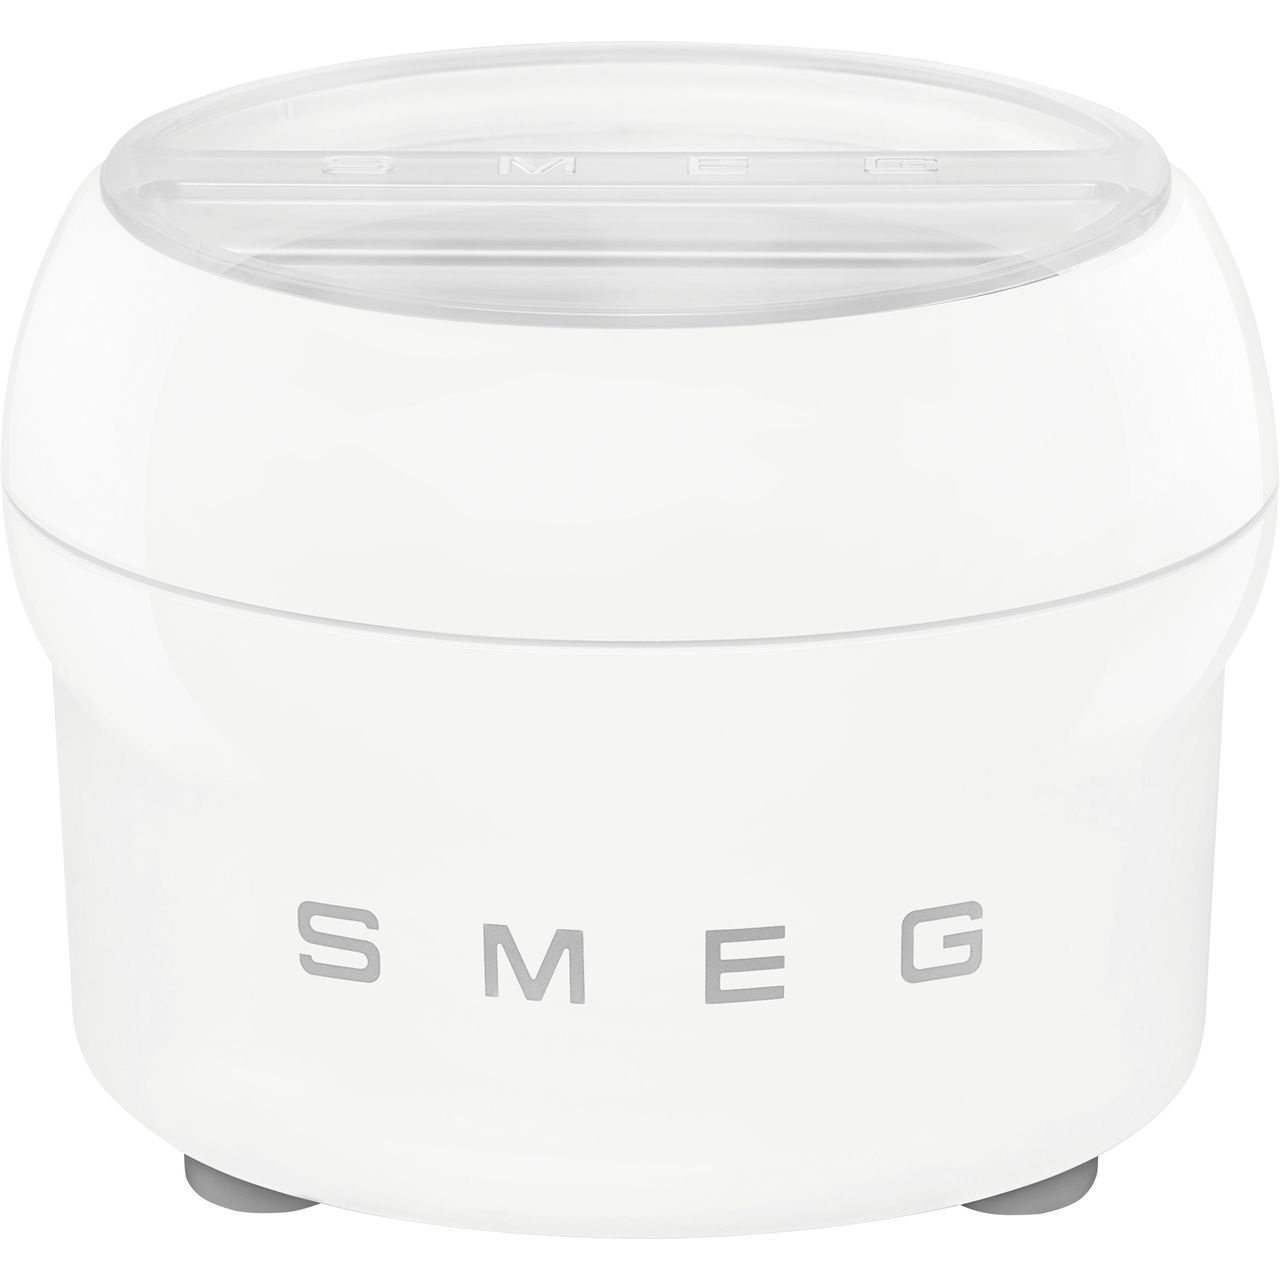 Smeg 50's Retro SMIC01 Food Mixer Attachment Review